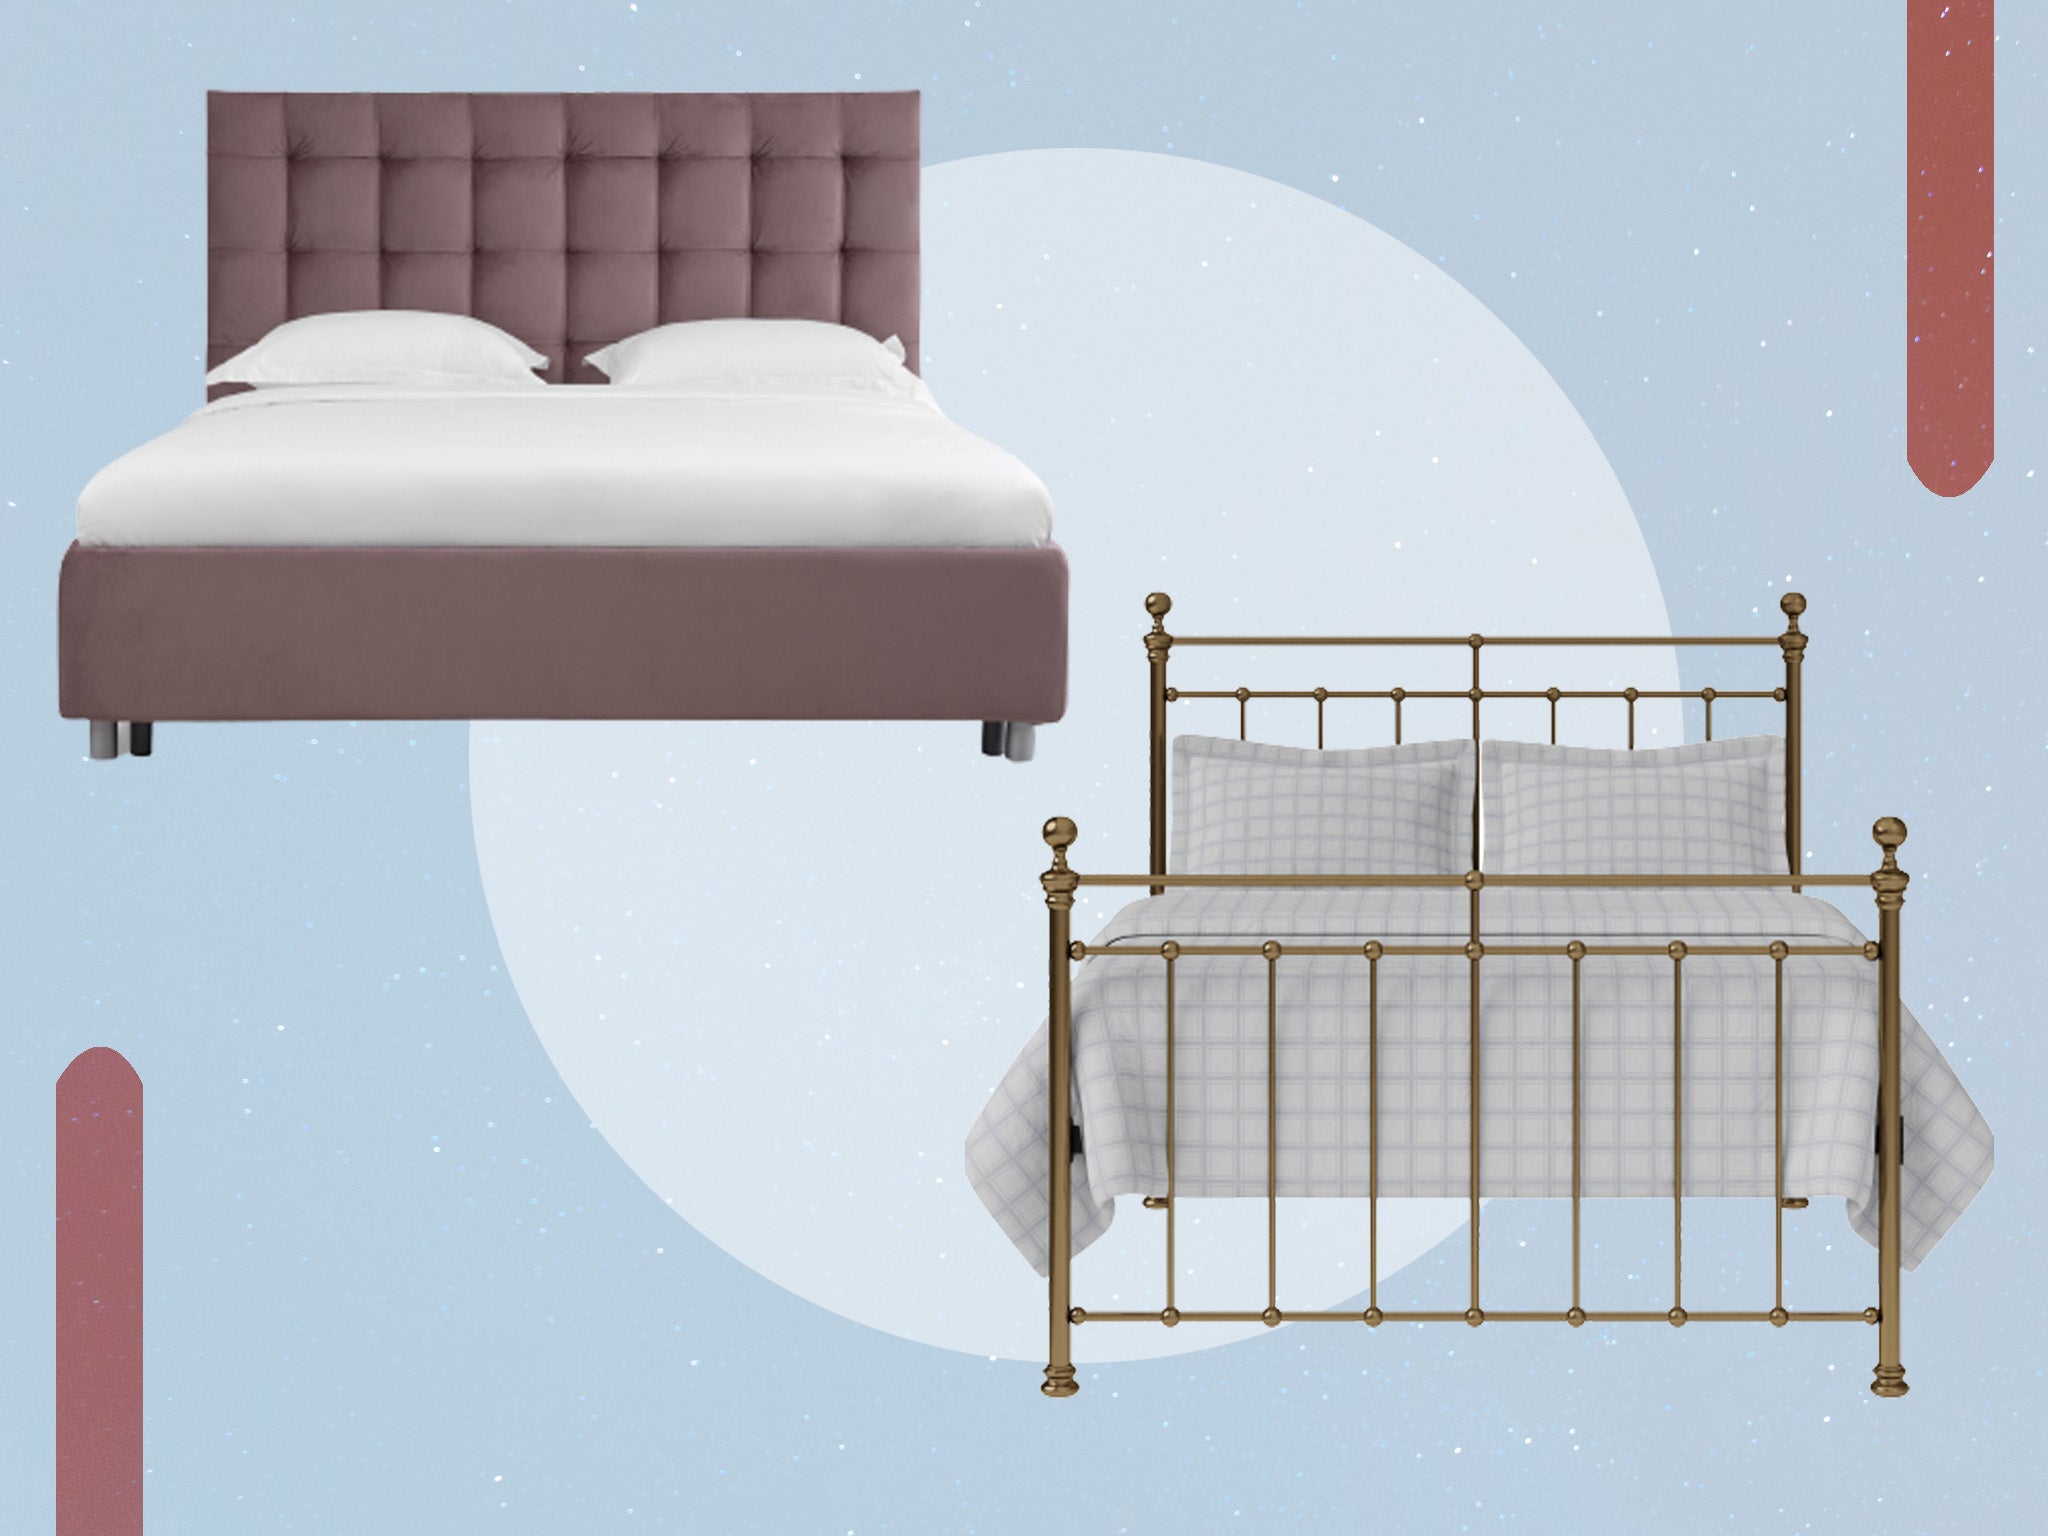 Brass Beds & Bed Frames for sale - Original Bed Co - UK